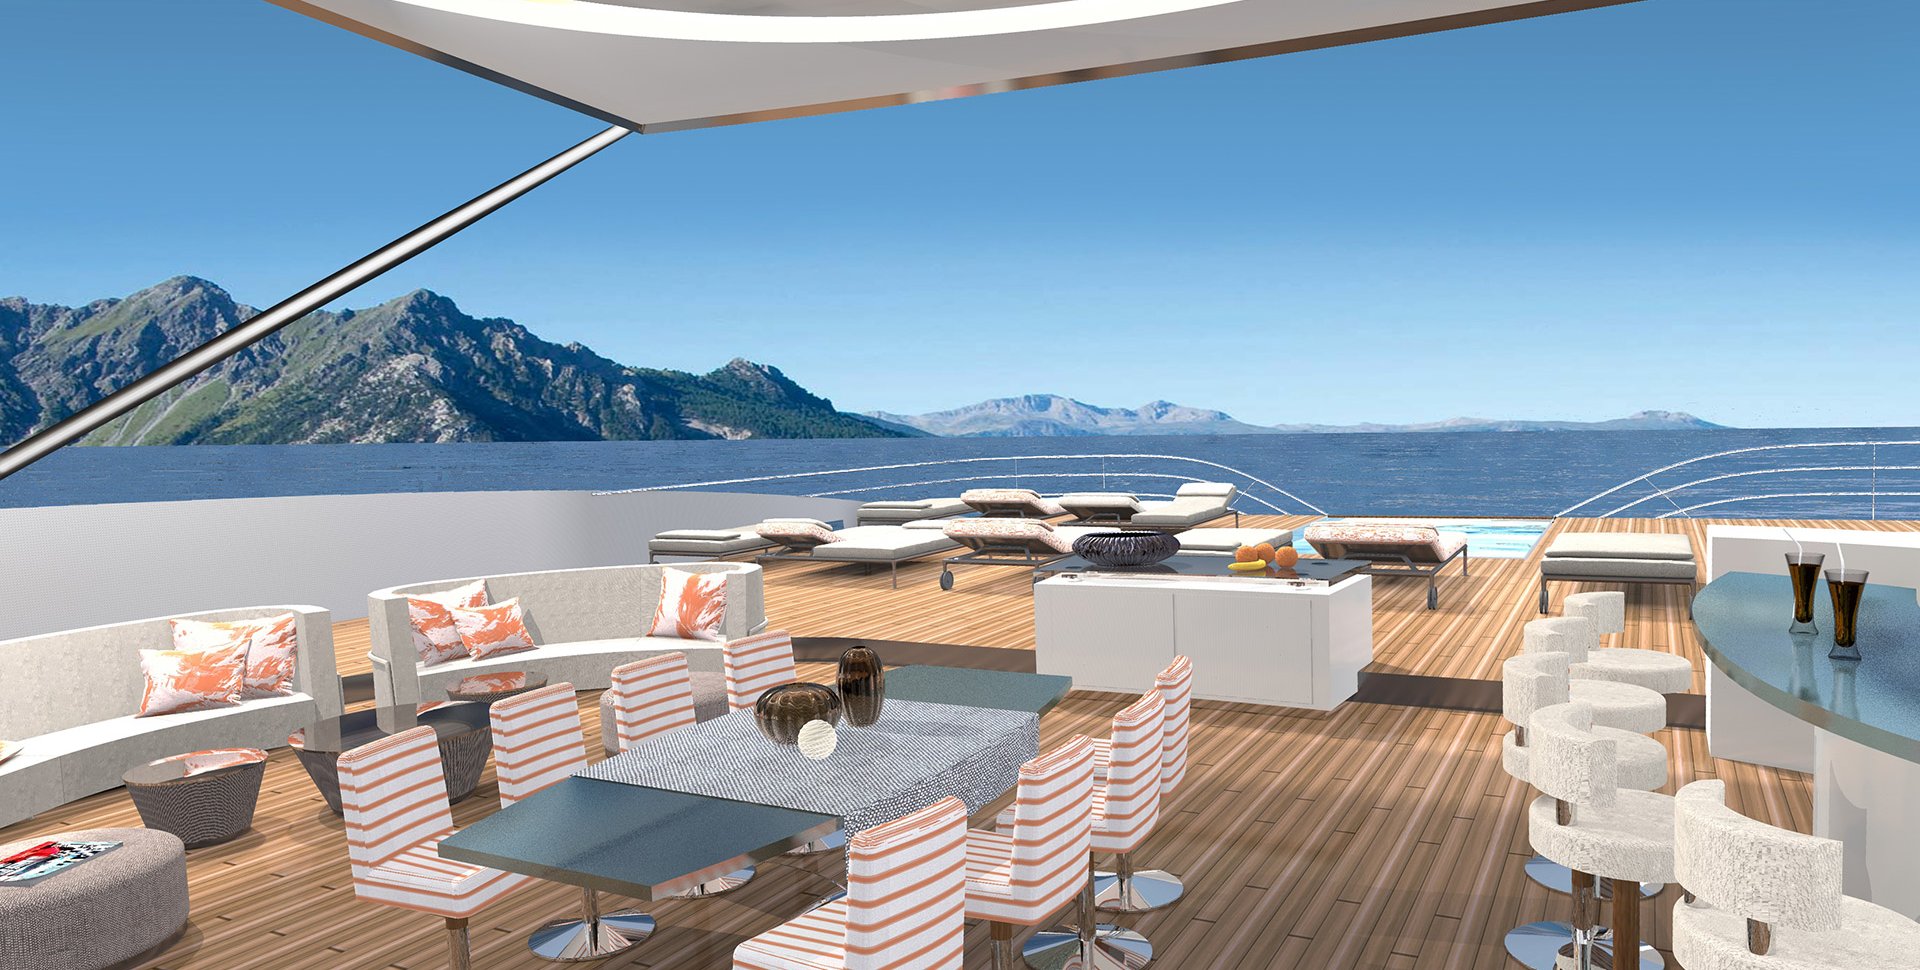 Design for the boat Exos 262 by Borella Art Design